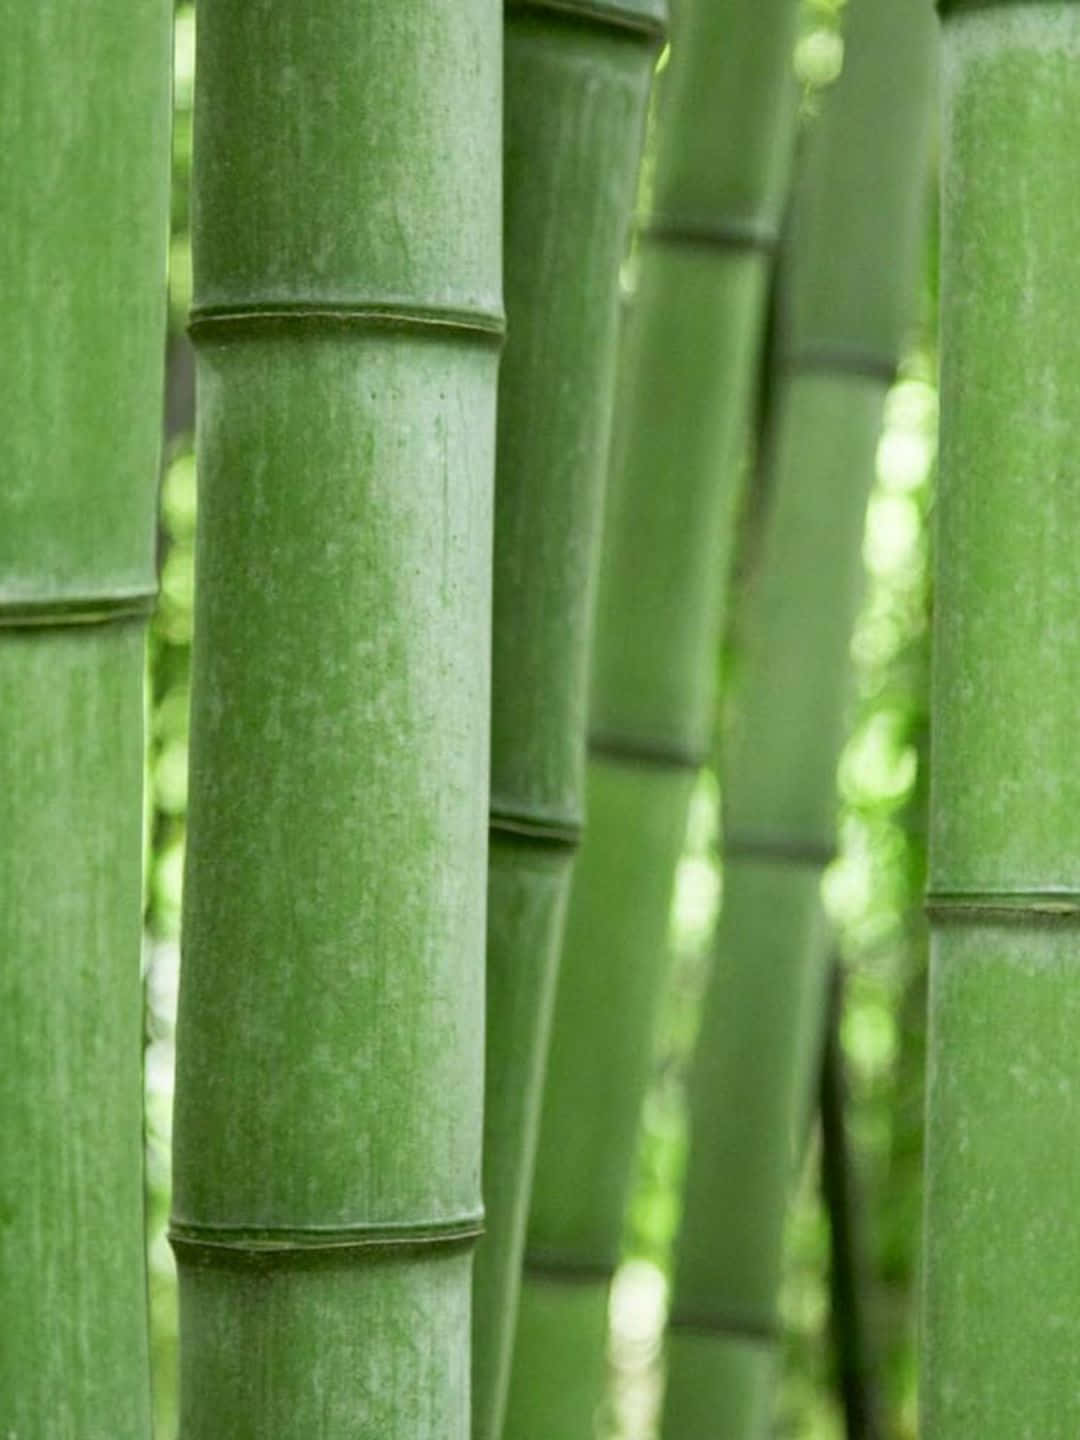 Fondode Pantalla De Bambú Con Manchas En Los Tallos A 1440p.